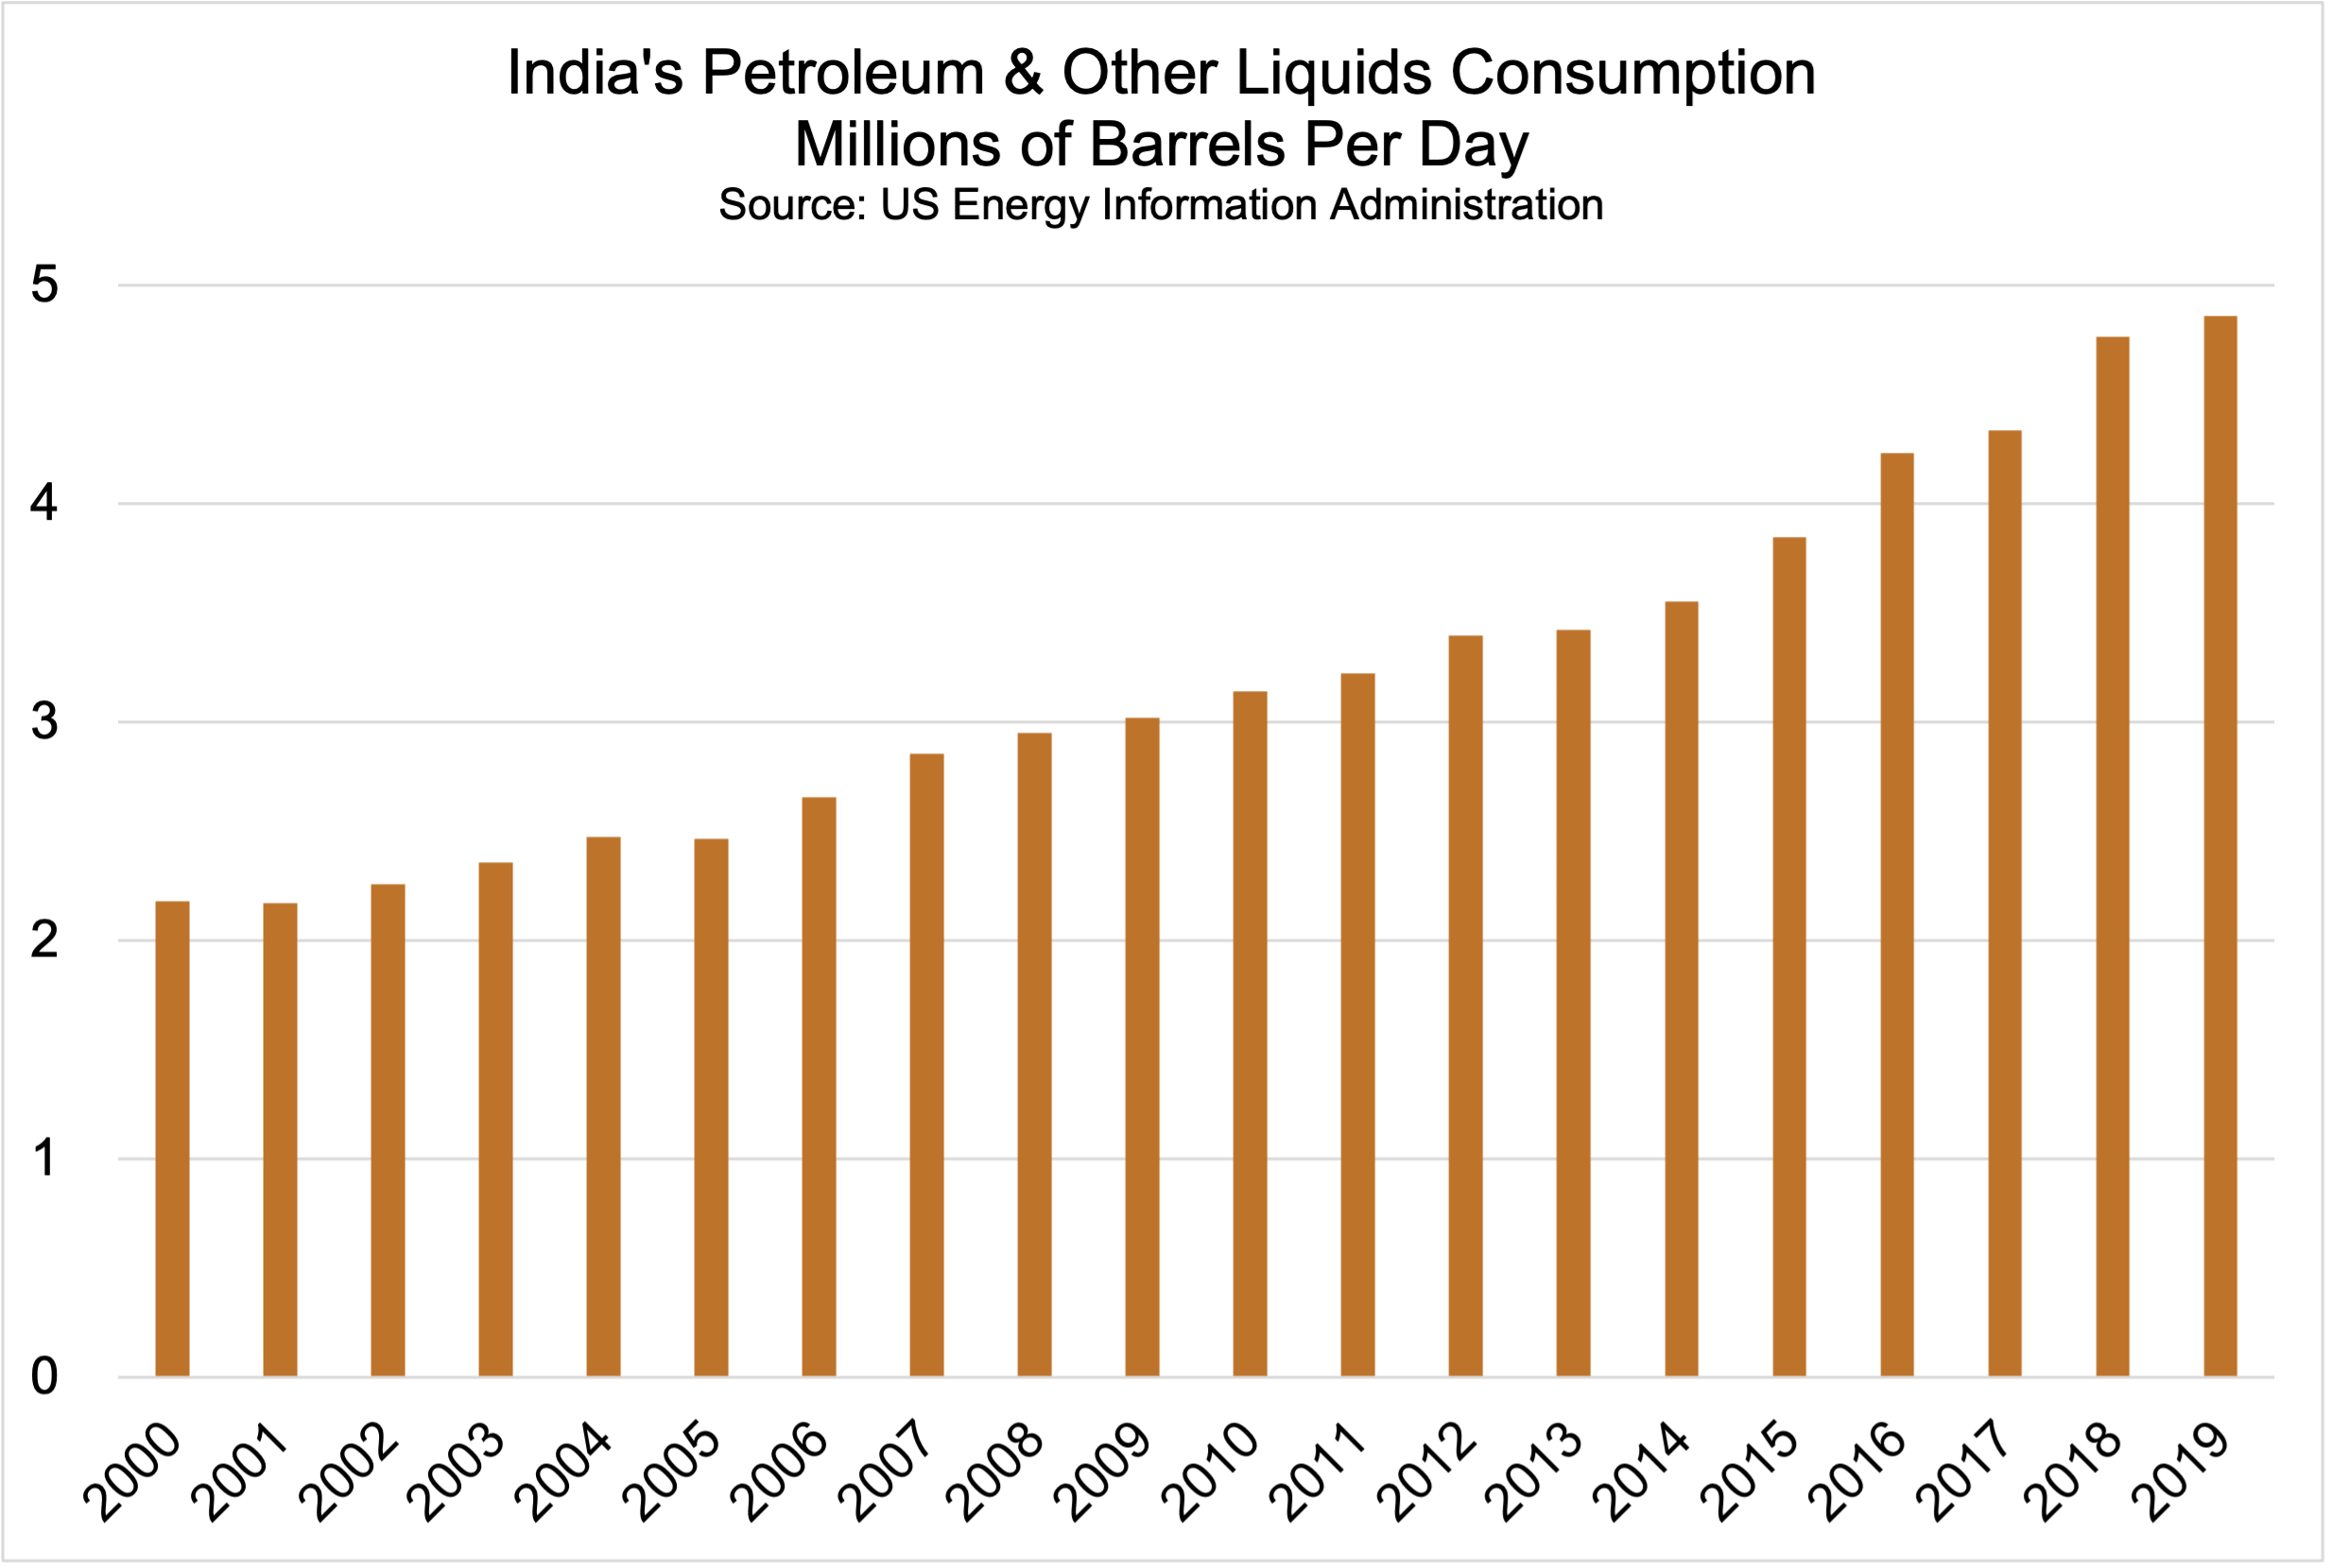 India Oil Consumption 2000-2019